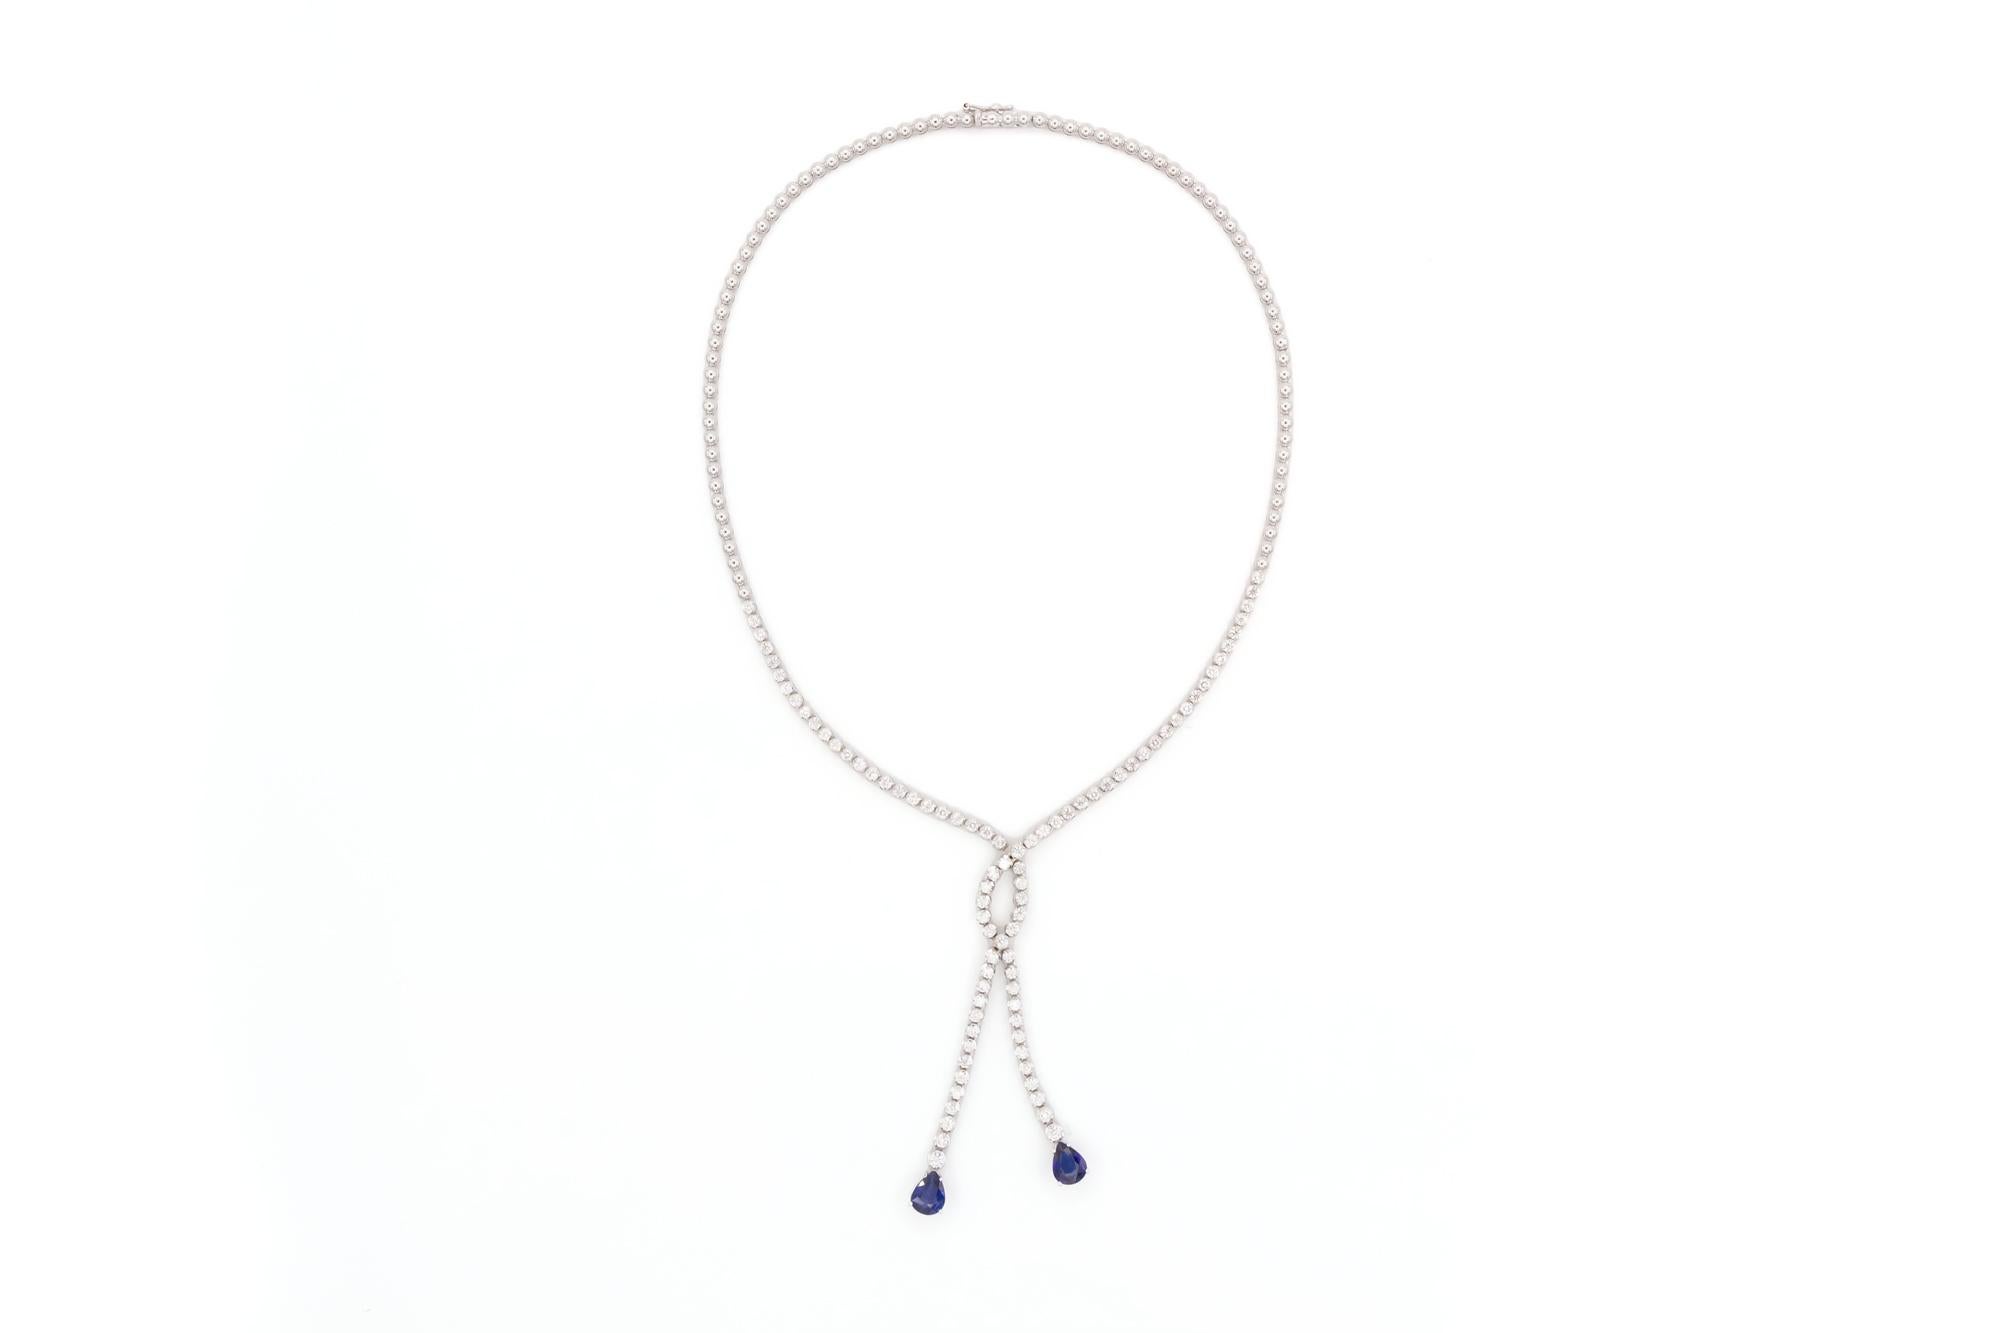 Nous avons le plaisir de vous proposer ce collier double goutte en or blanc 18k diamant et saphir. Un design intemporel en or blanc 18 carats, des diamants ronds éblouissants et des saphirs en forme de poire. Ce superbe collier comprend des saphirs